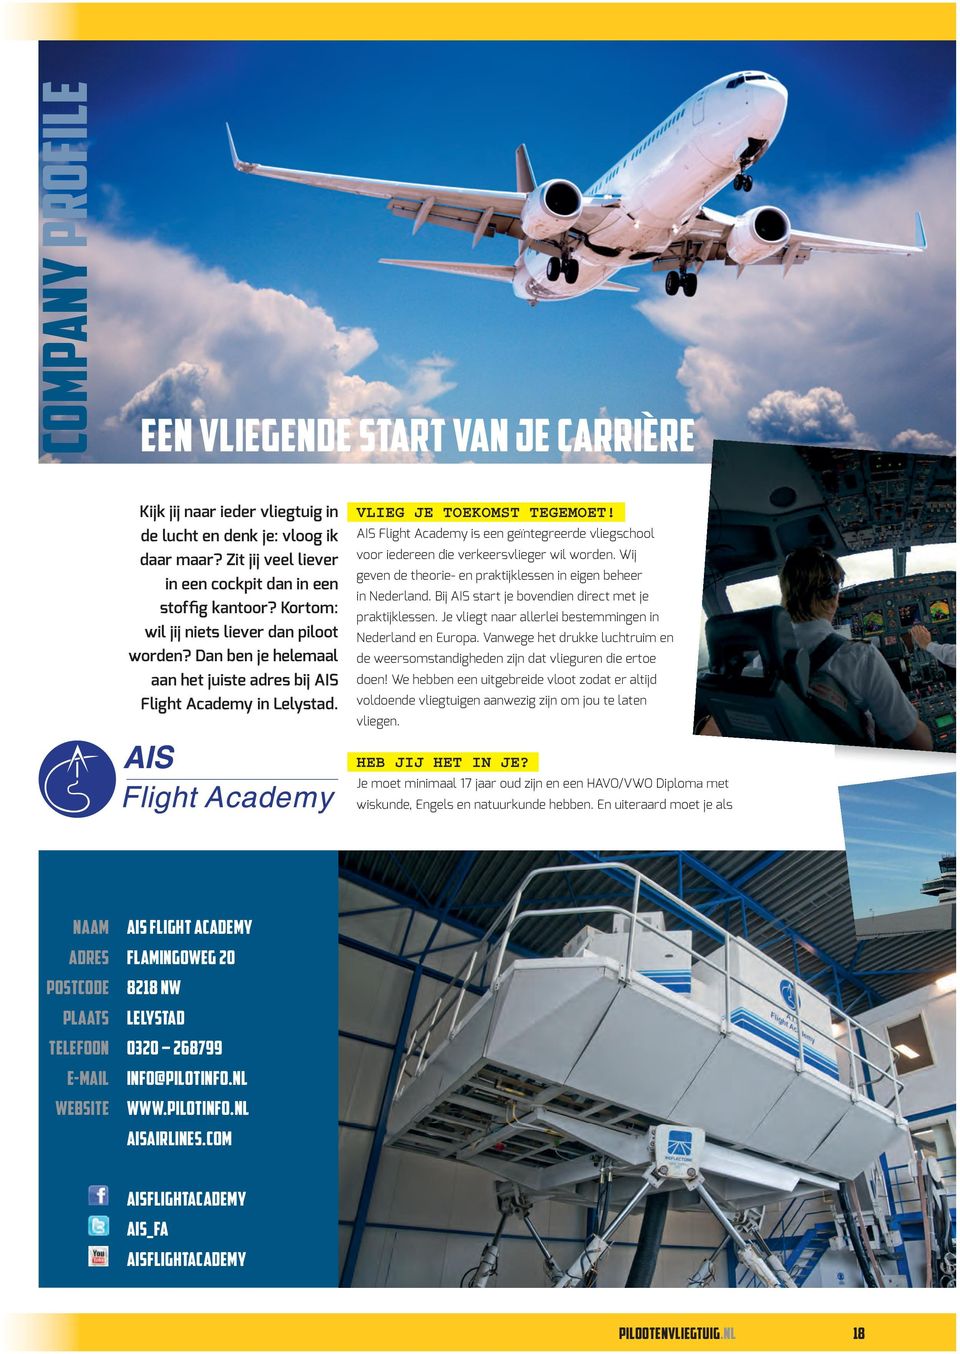 AIS Flight Academy is een geïntegreerde vliegschool voor iedereen die verkeersvlieger wil worden. Wij geven de theorie- en praktijklessen in eigen beheer in Nederland.